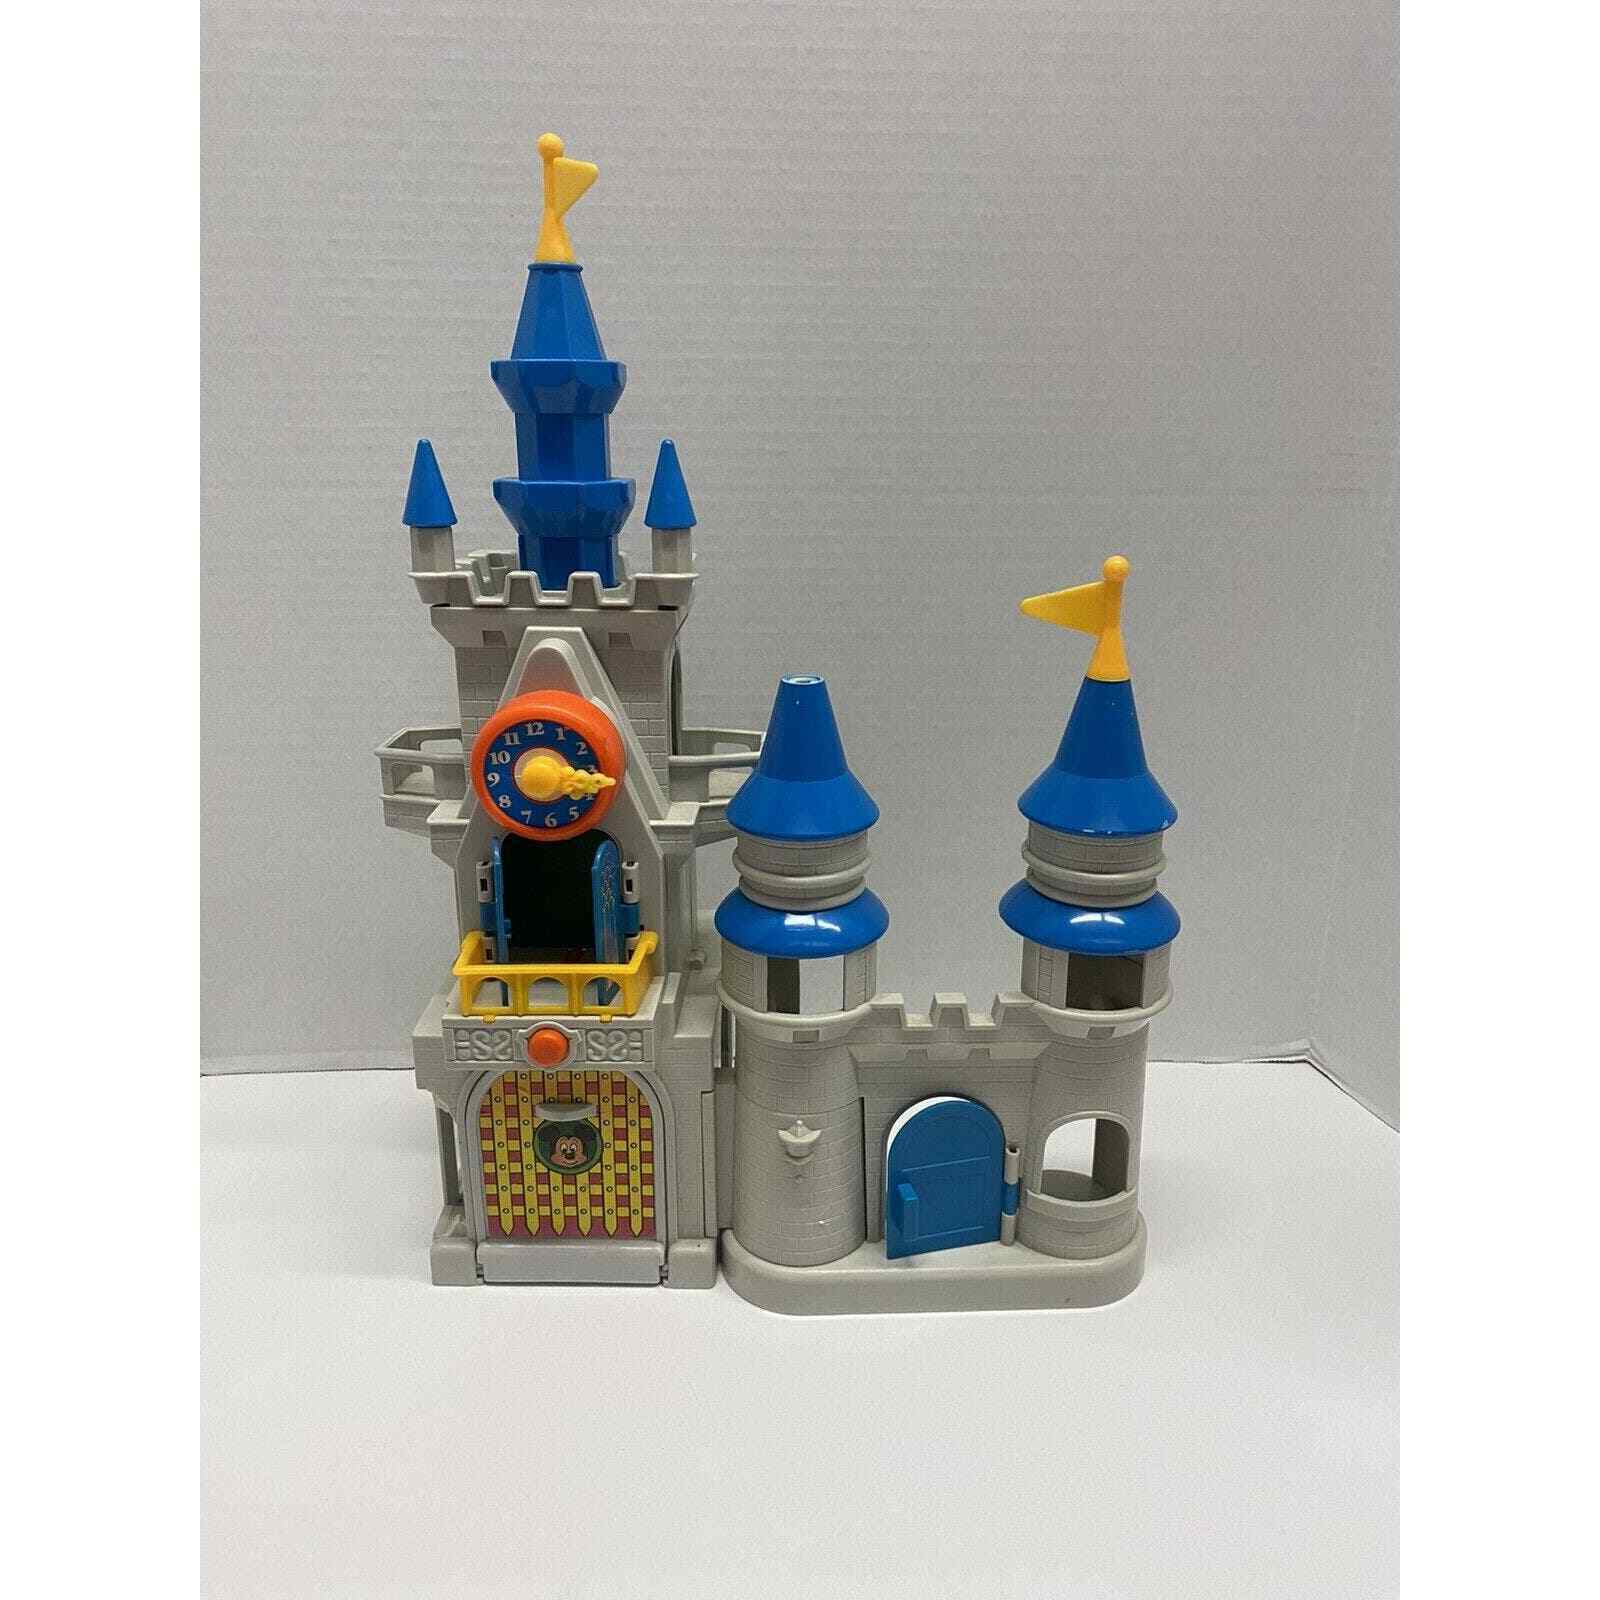 Vintage 1987 Li'l Playmates Disney Magic Kingdom Castle Playset (Incomplete)